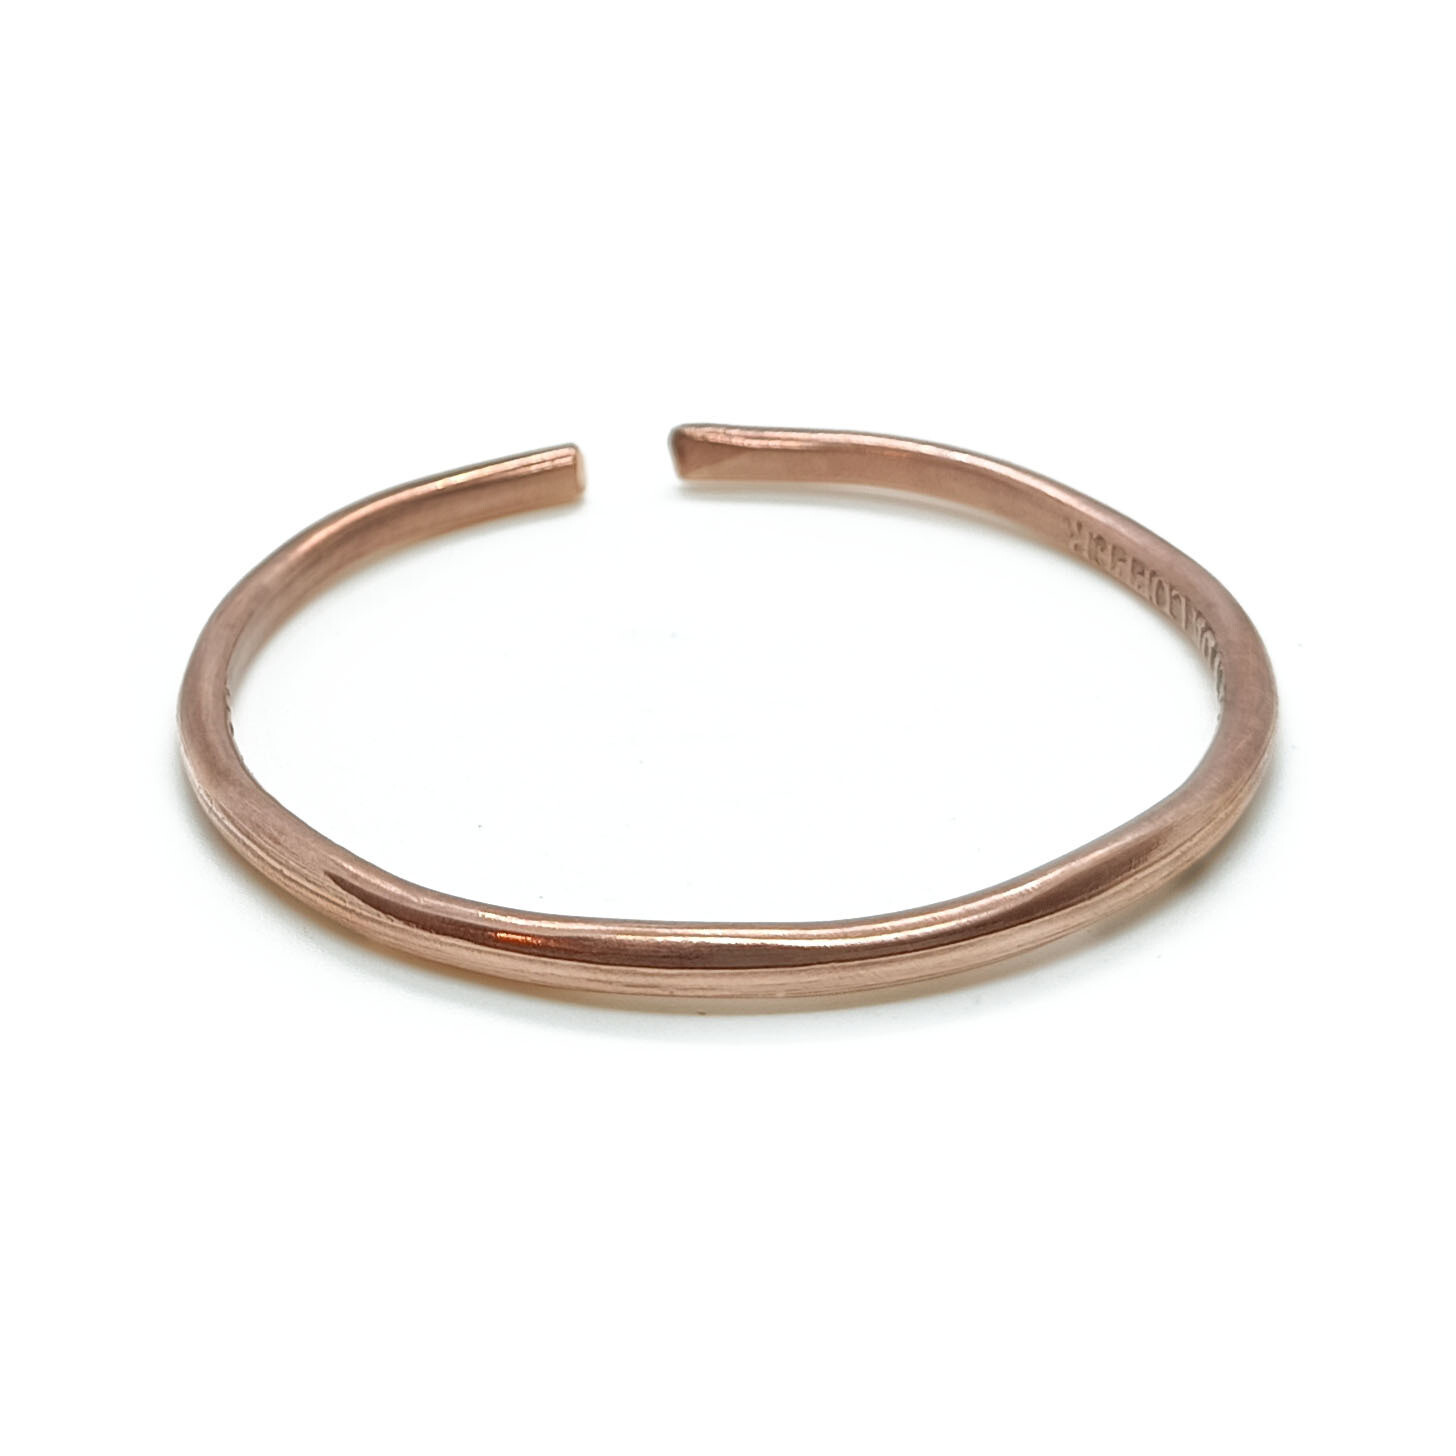 Adjustable copper bangle